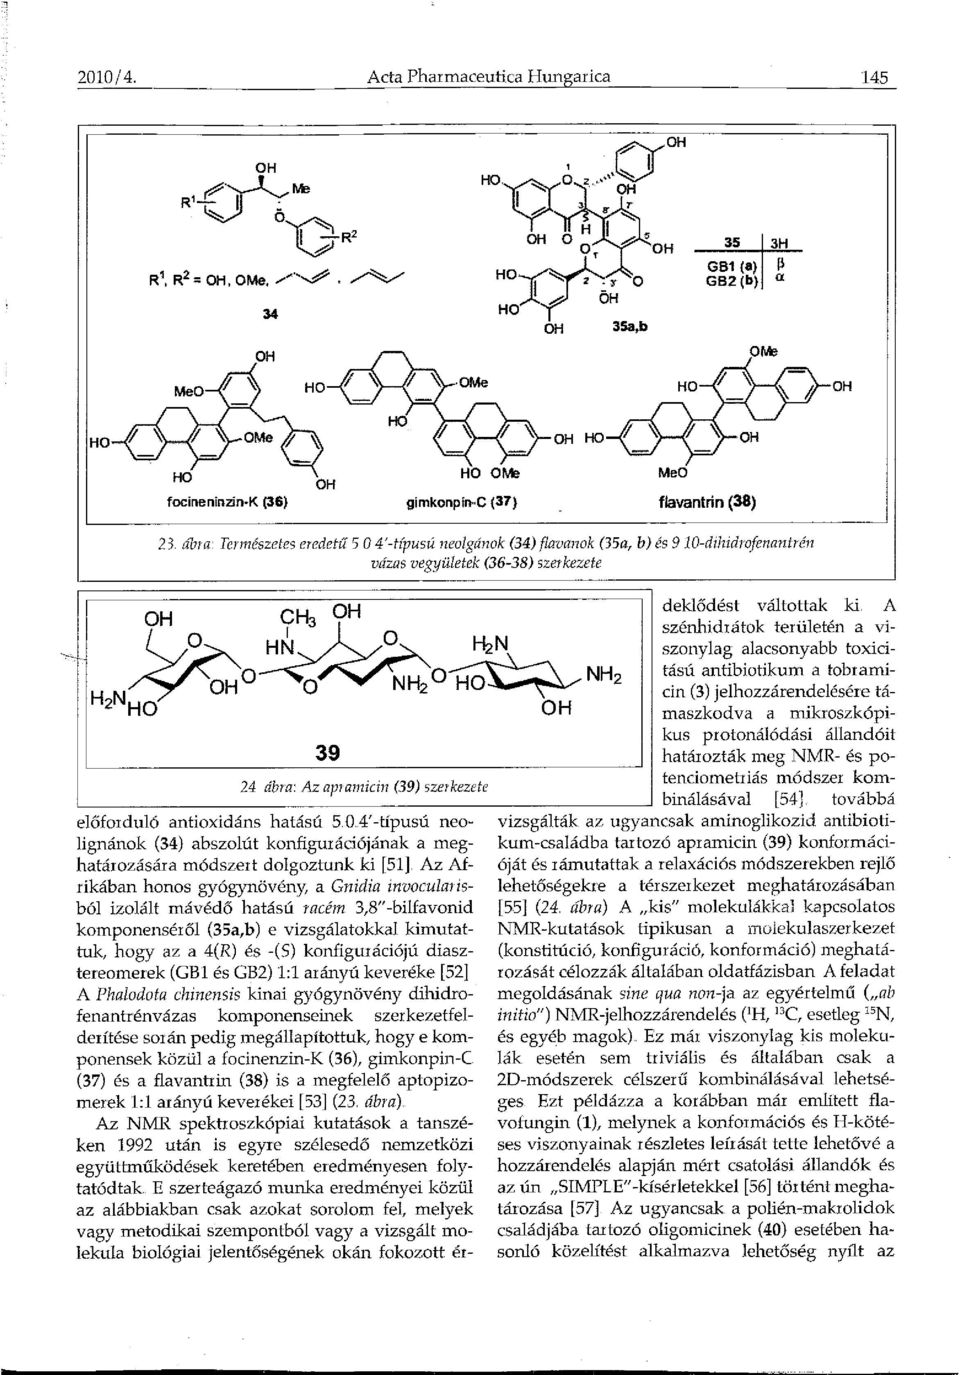 Az apiamicin (39) szerkezete előforduló antioxidáns hatású 5 04' -típusú neolignánok (34) abszolút konfigurációjának a meghatározására módszert dolgoztunk ki [51].